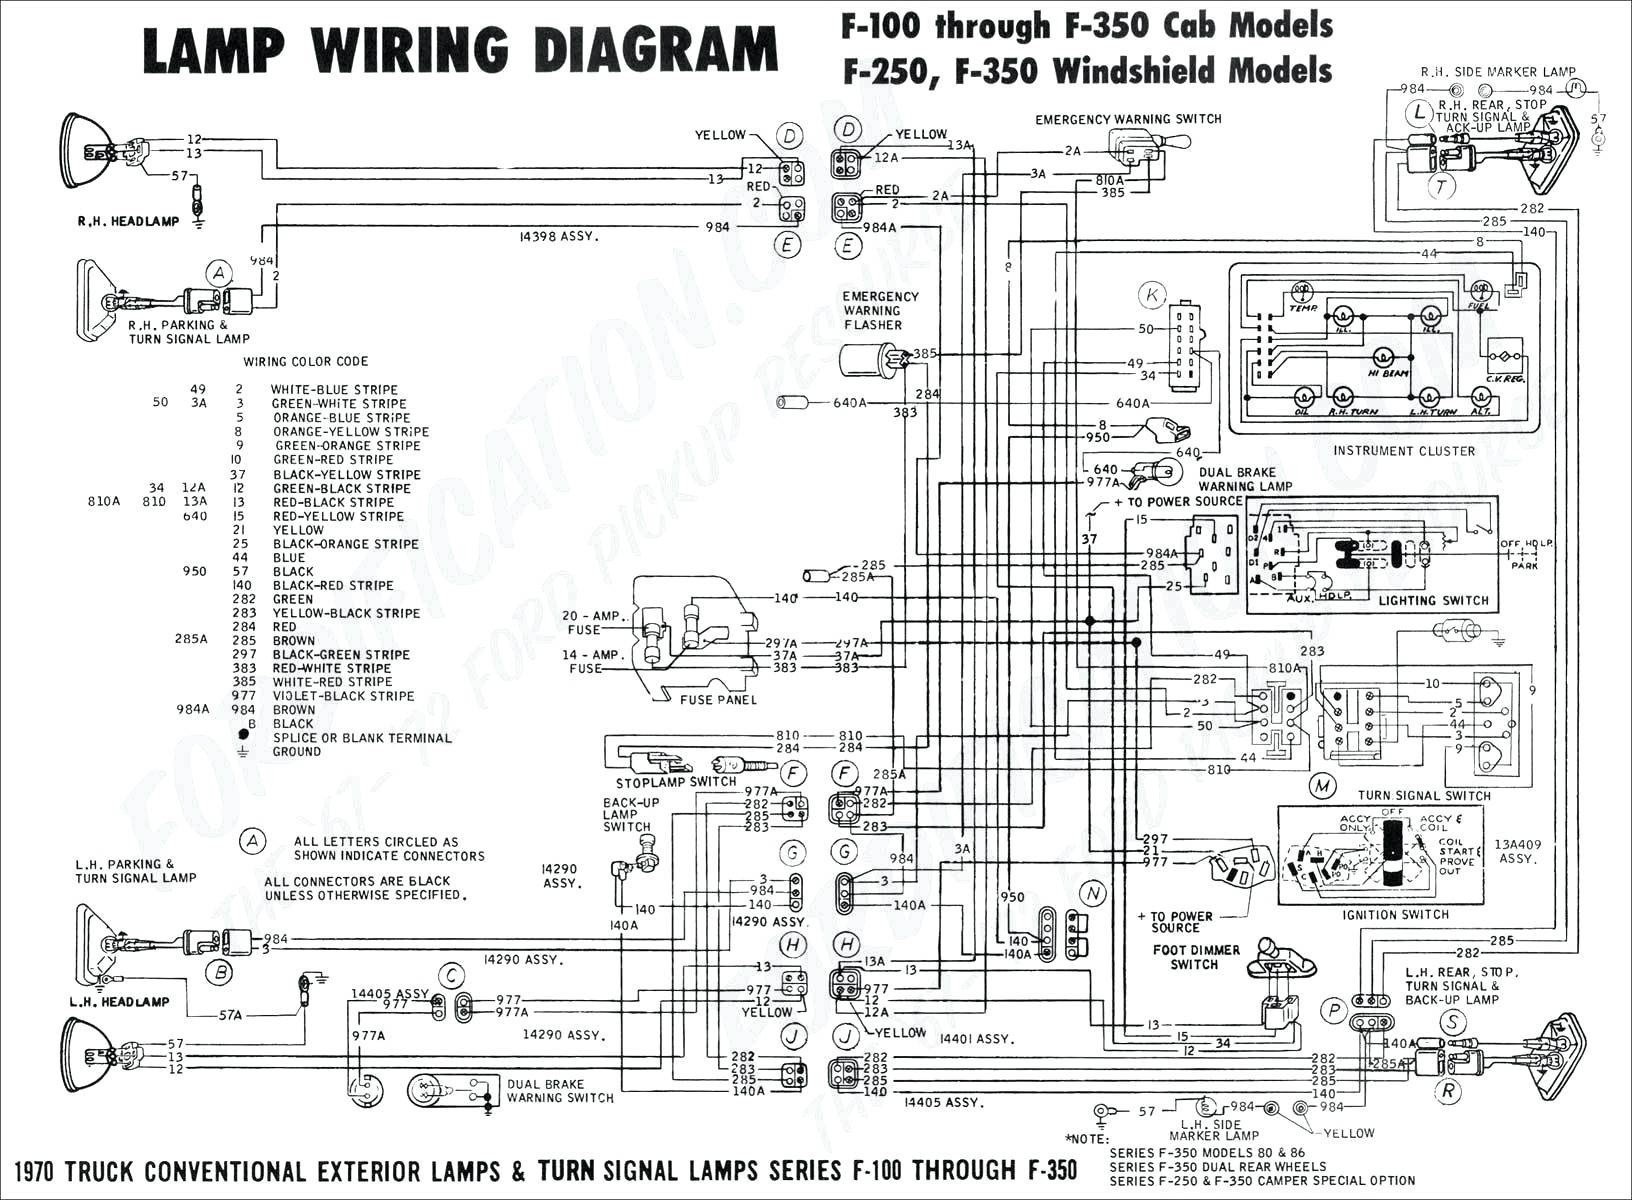 2005 Chevy Silverado Radio Wiring Diagram Inspirational 2015 Chevy Silverado Wiring Diagram Gallery